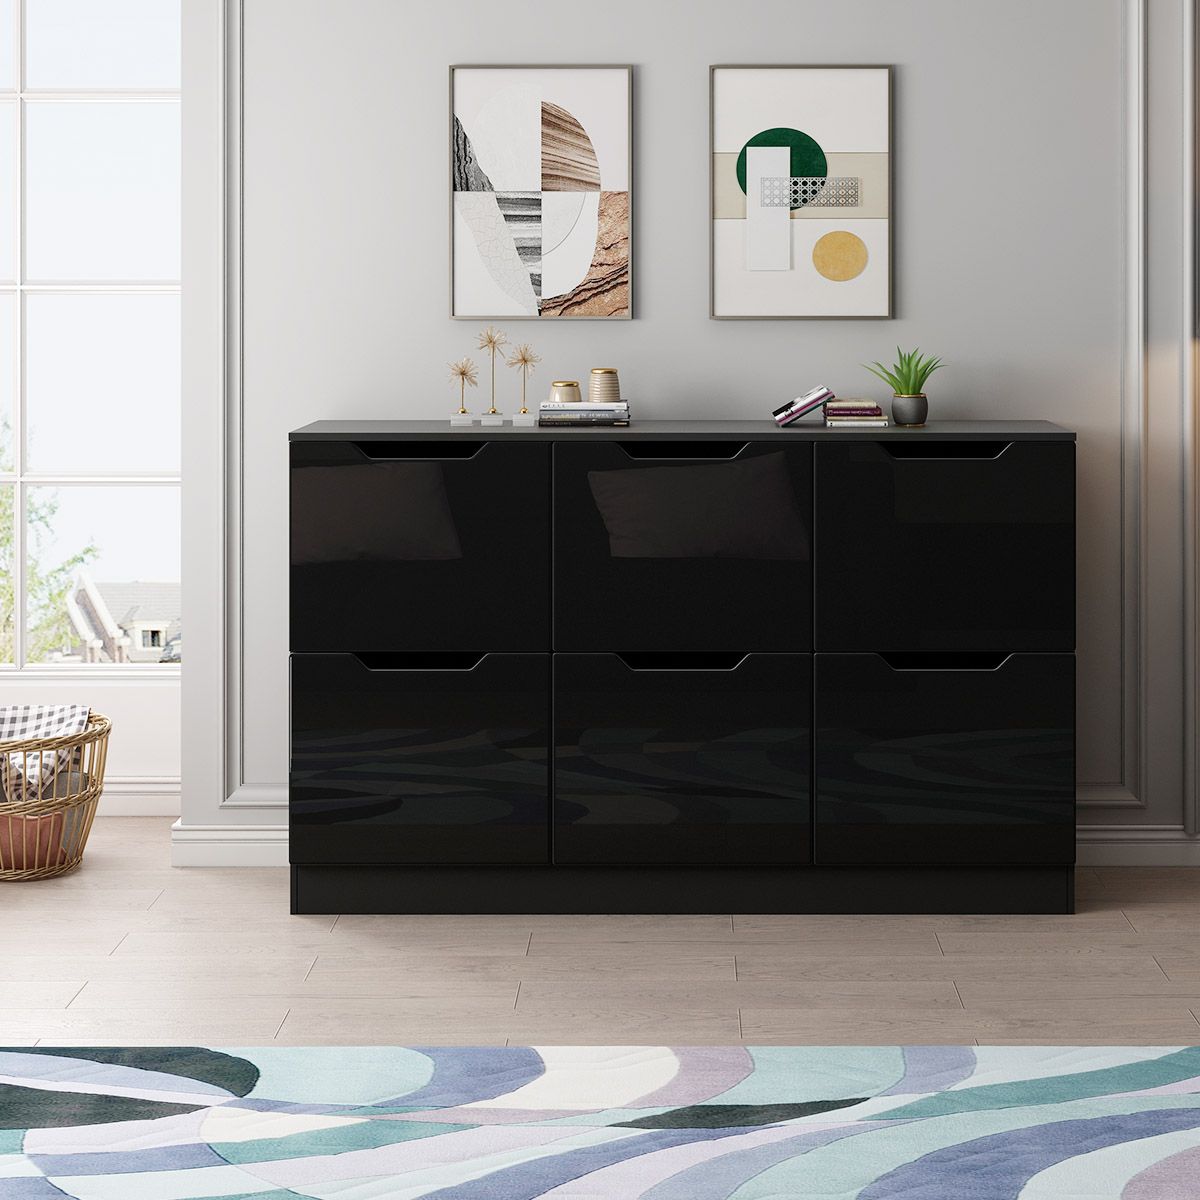 Six-Drawer Modern High-Gloss Wooden Chest Cabinet